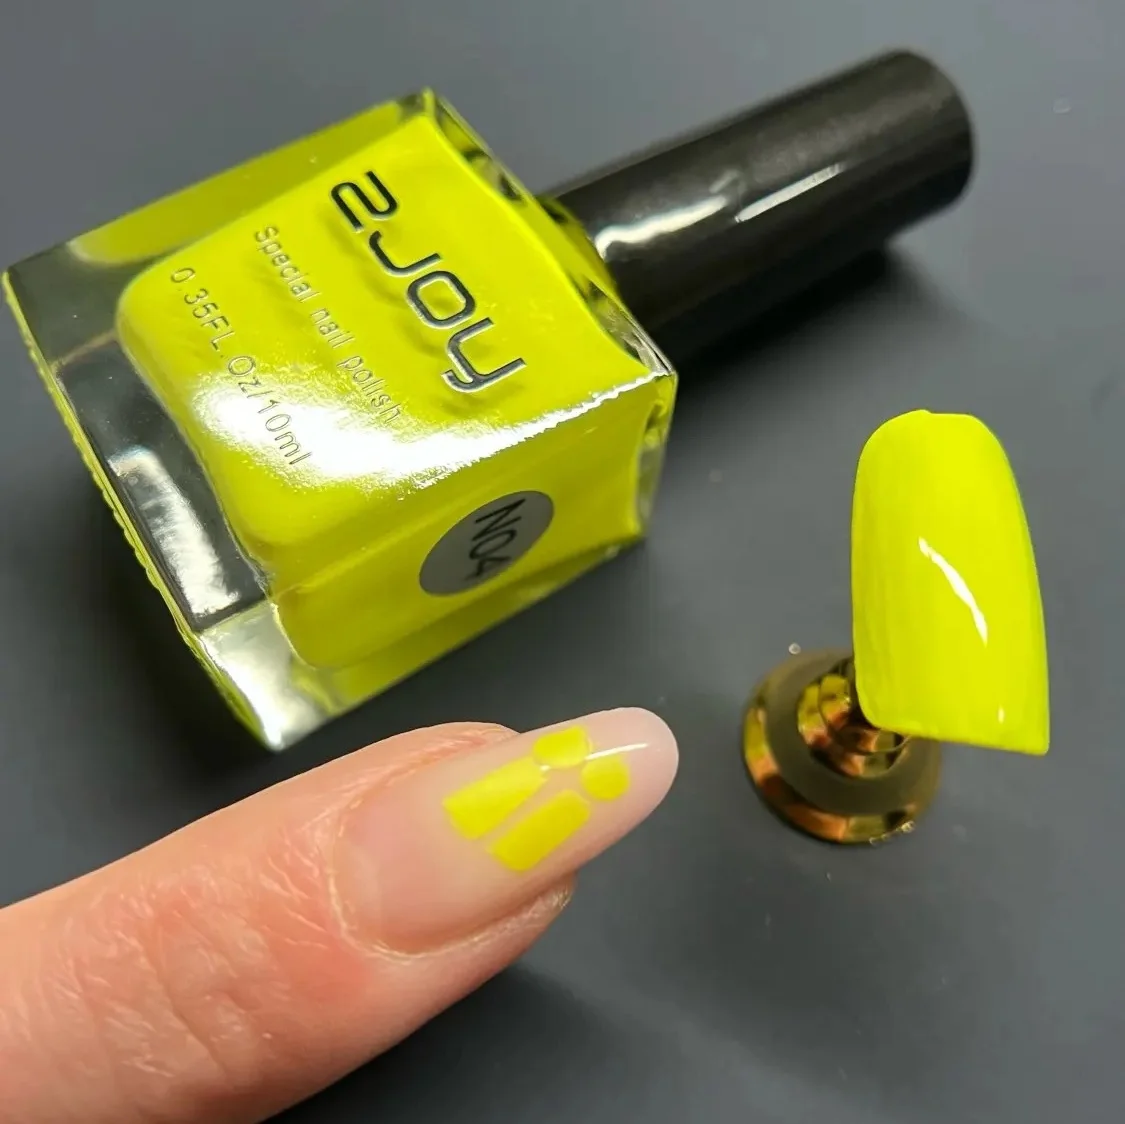 10ML Stamping Nail Polish Colorful Nail Printing UV Gel Varnish Soak Off Oil Stamp for Nails Hybrid Fast Dry Nail Polish Lacquer